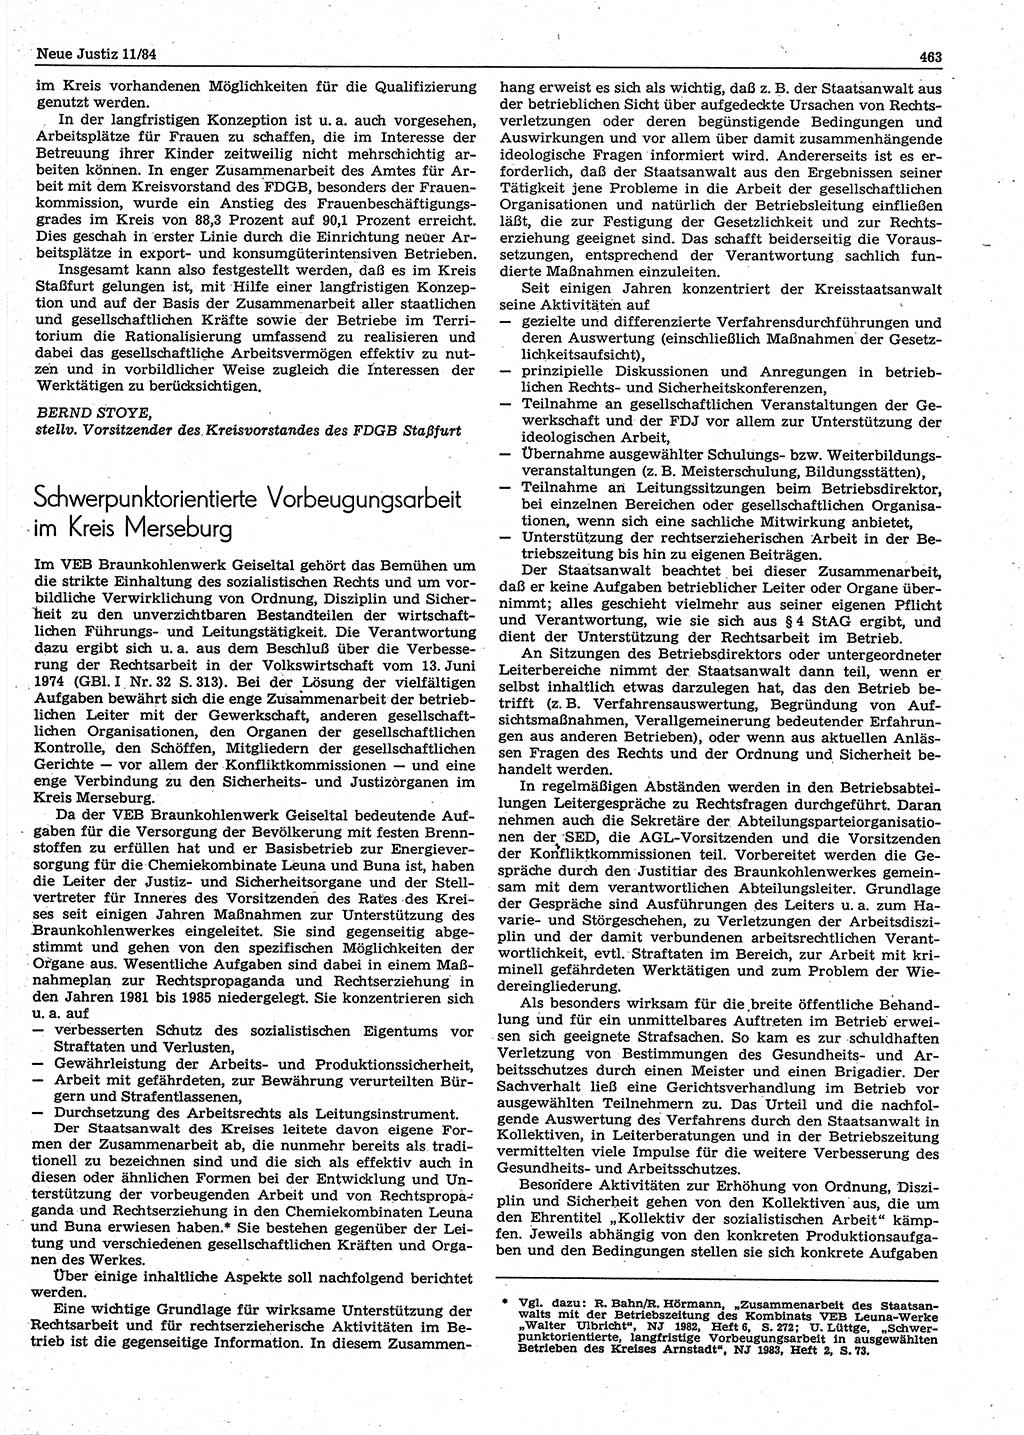 Neue Justiz (NJ), Zeitschrift für sozialistisches Recht und Gesetzlichkeit [Deutsche Demokratische Republik (DDR)], 38. Jahrgang 1984, Seite 463 (NJ DDR 1984, S. 463)